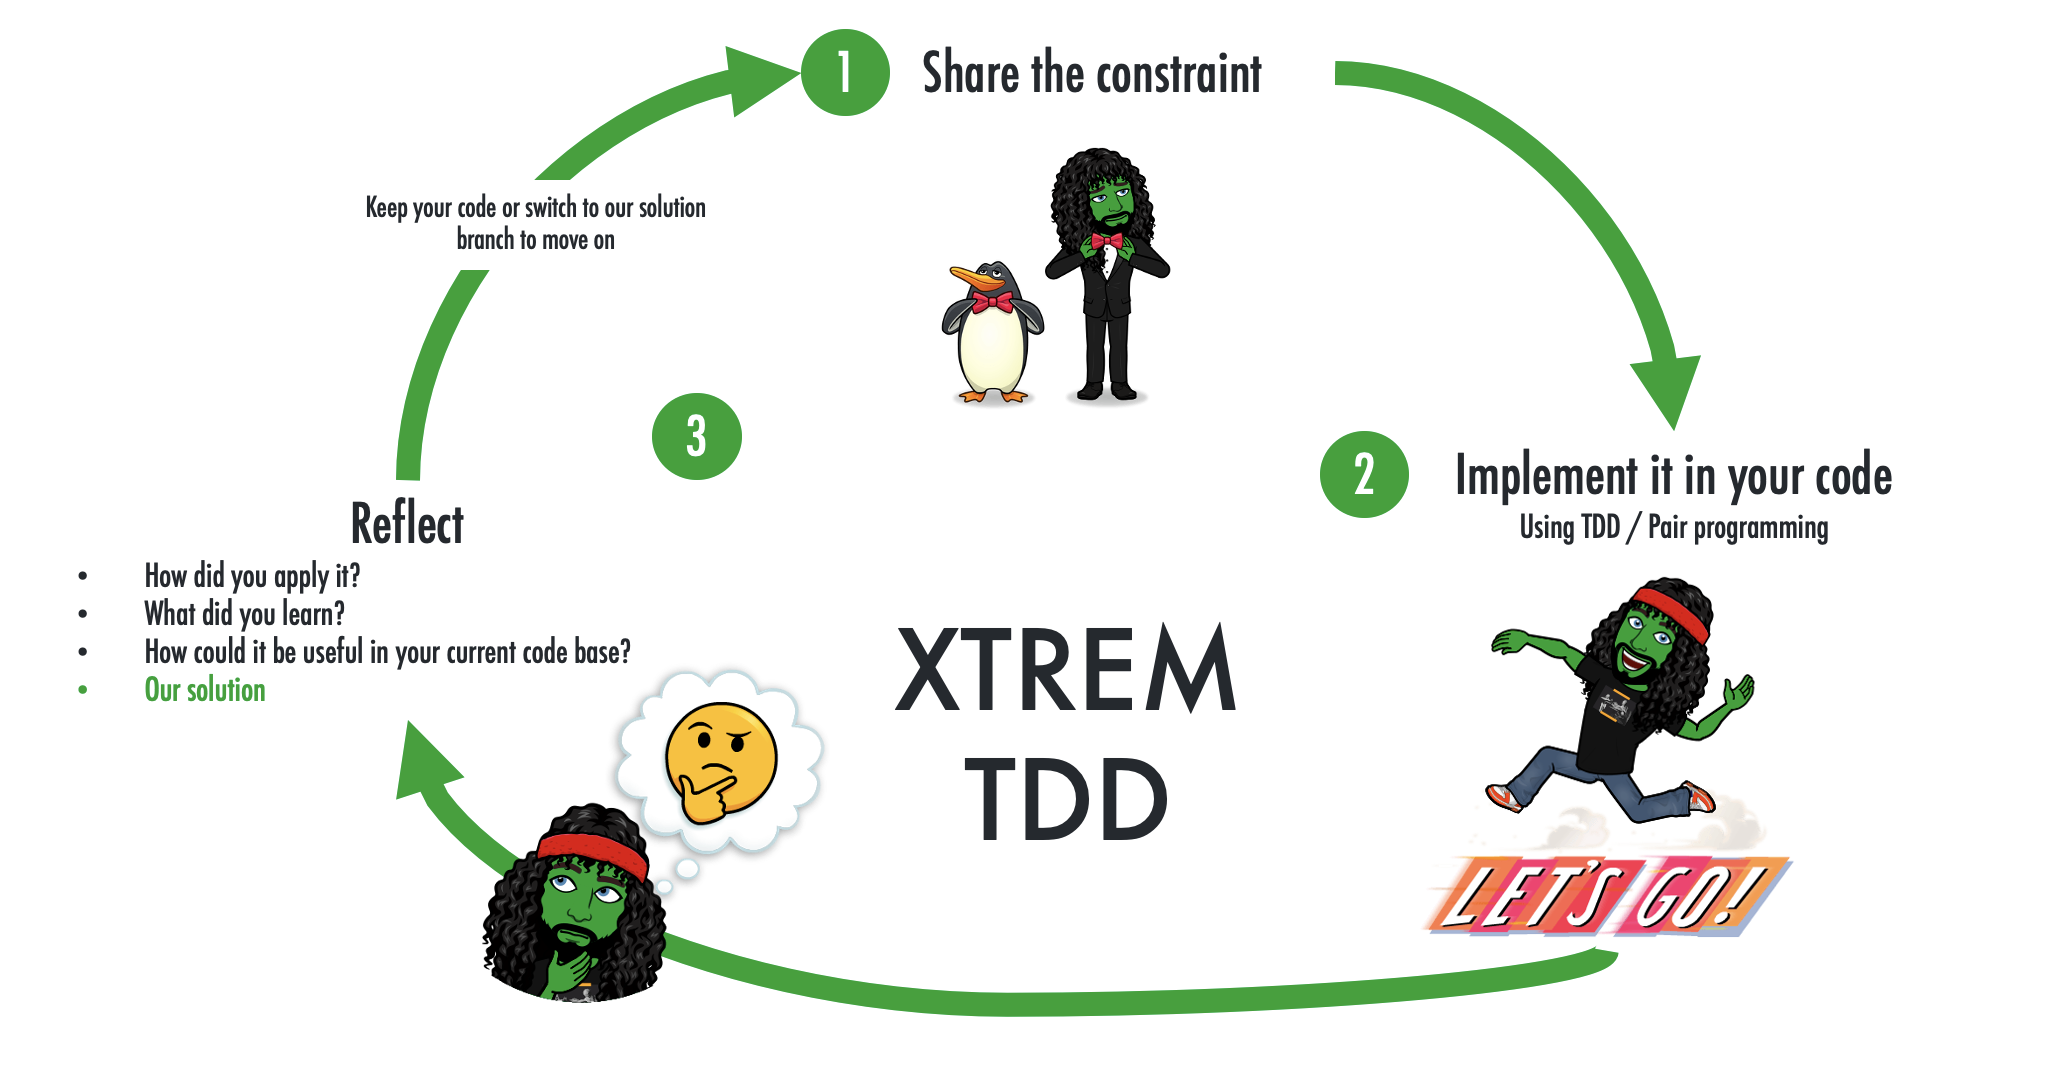 Xtrem TDD explained